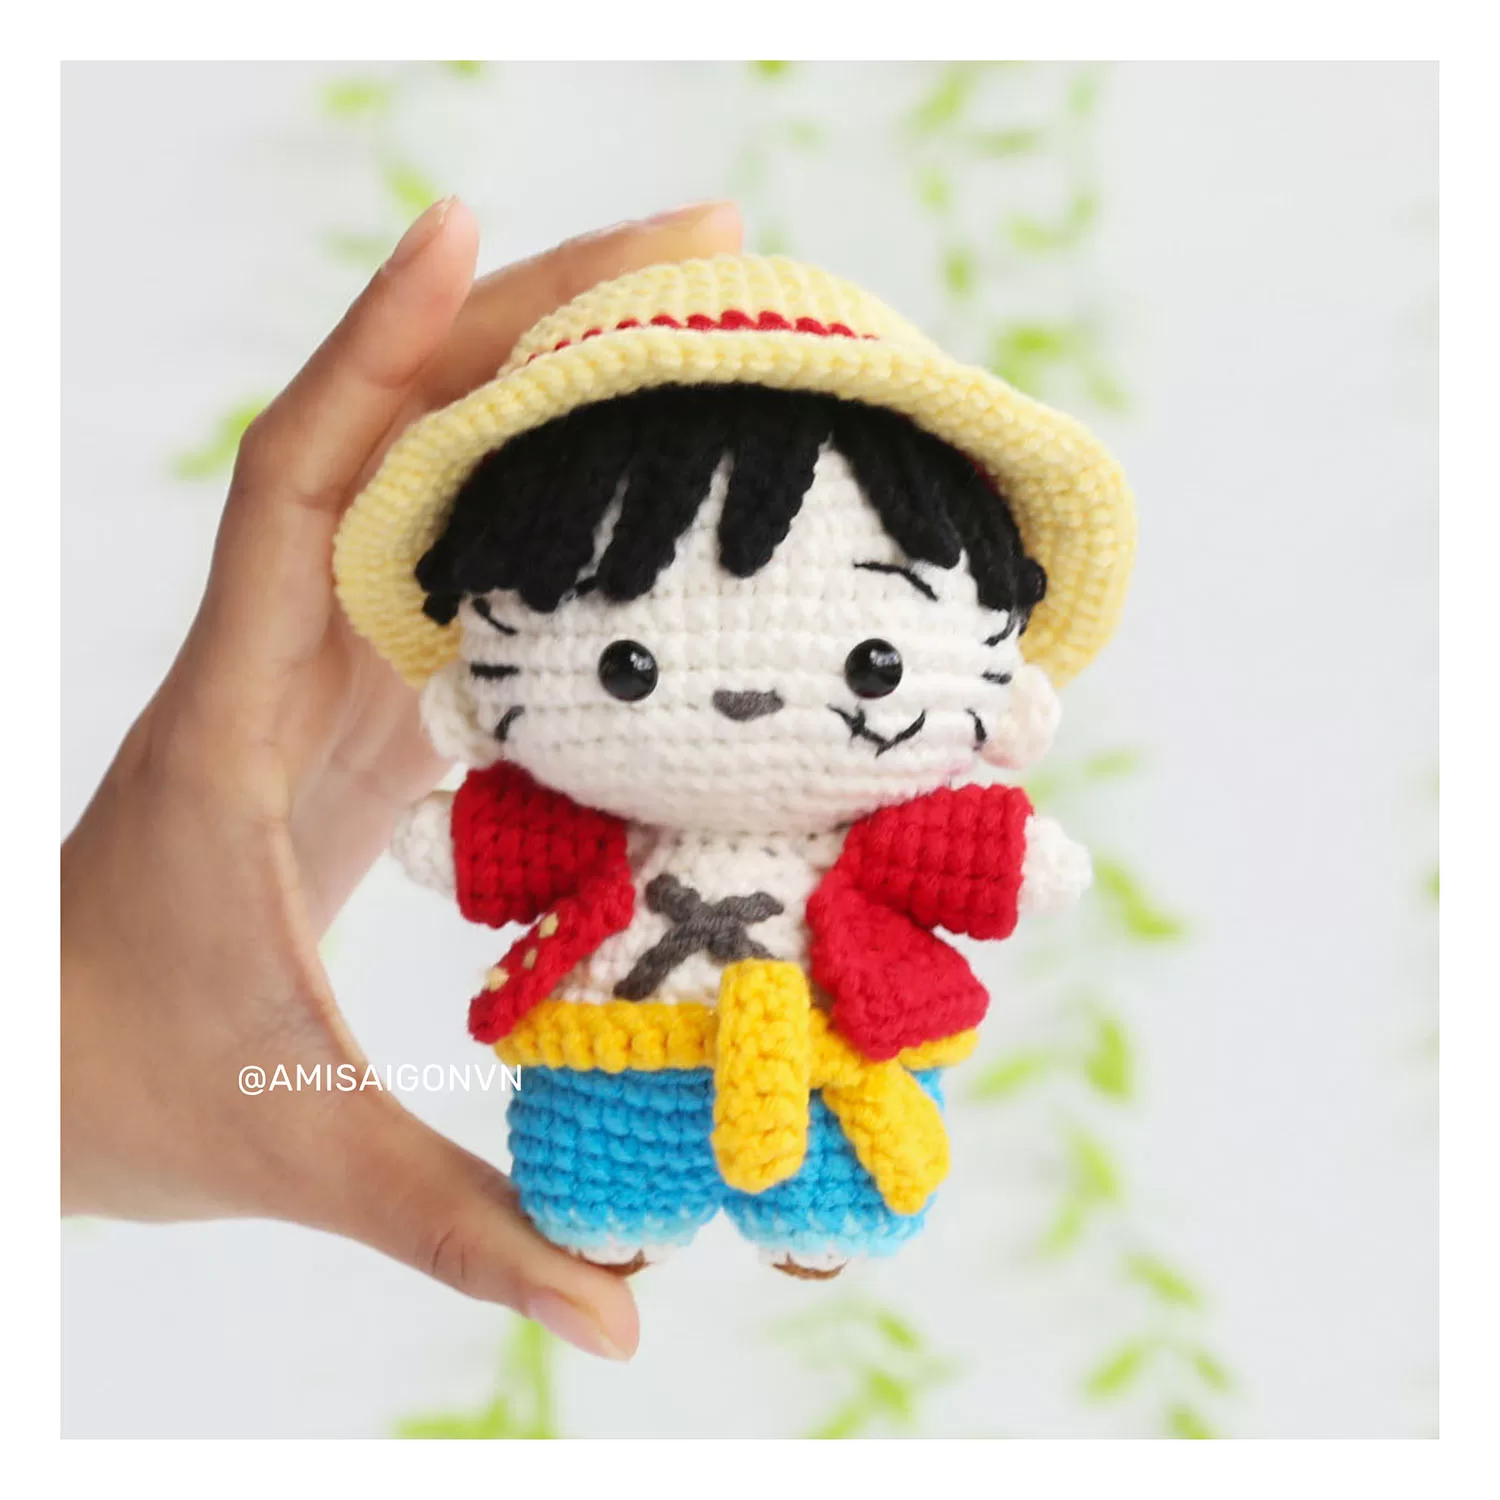 Monkey D. Luffy Doll Amigurumi | Crochet Pattern | Amigurumi Tutorial PDF in English | AmiSaigon